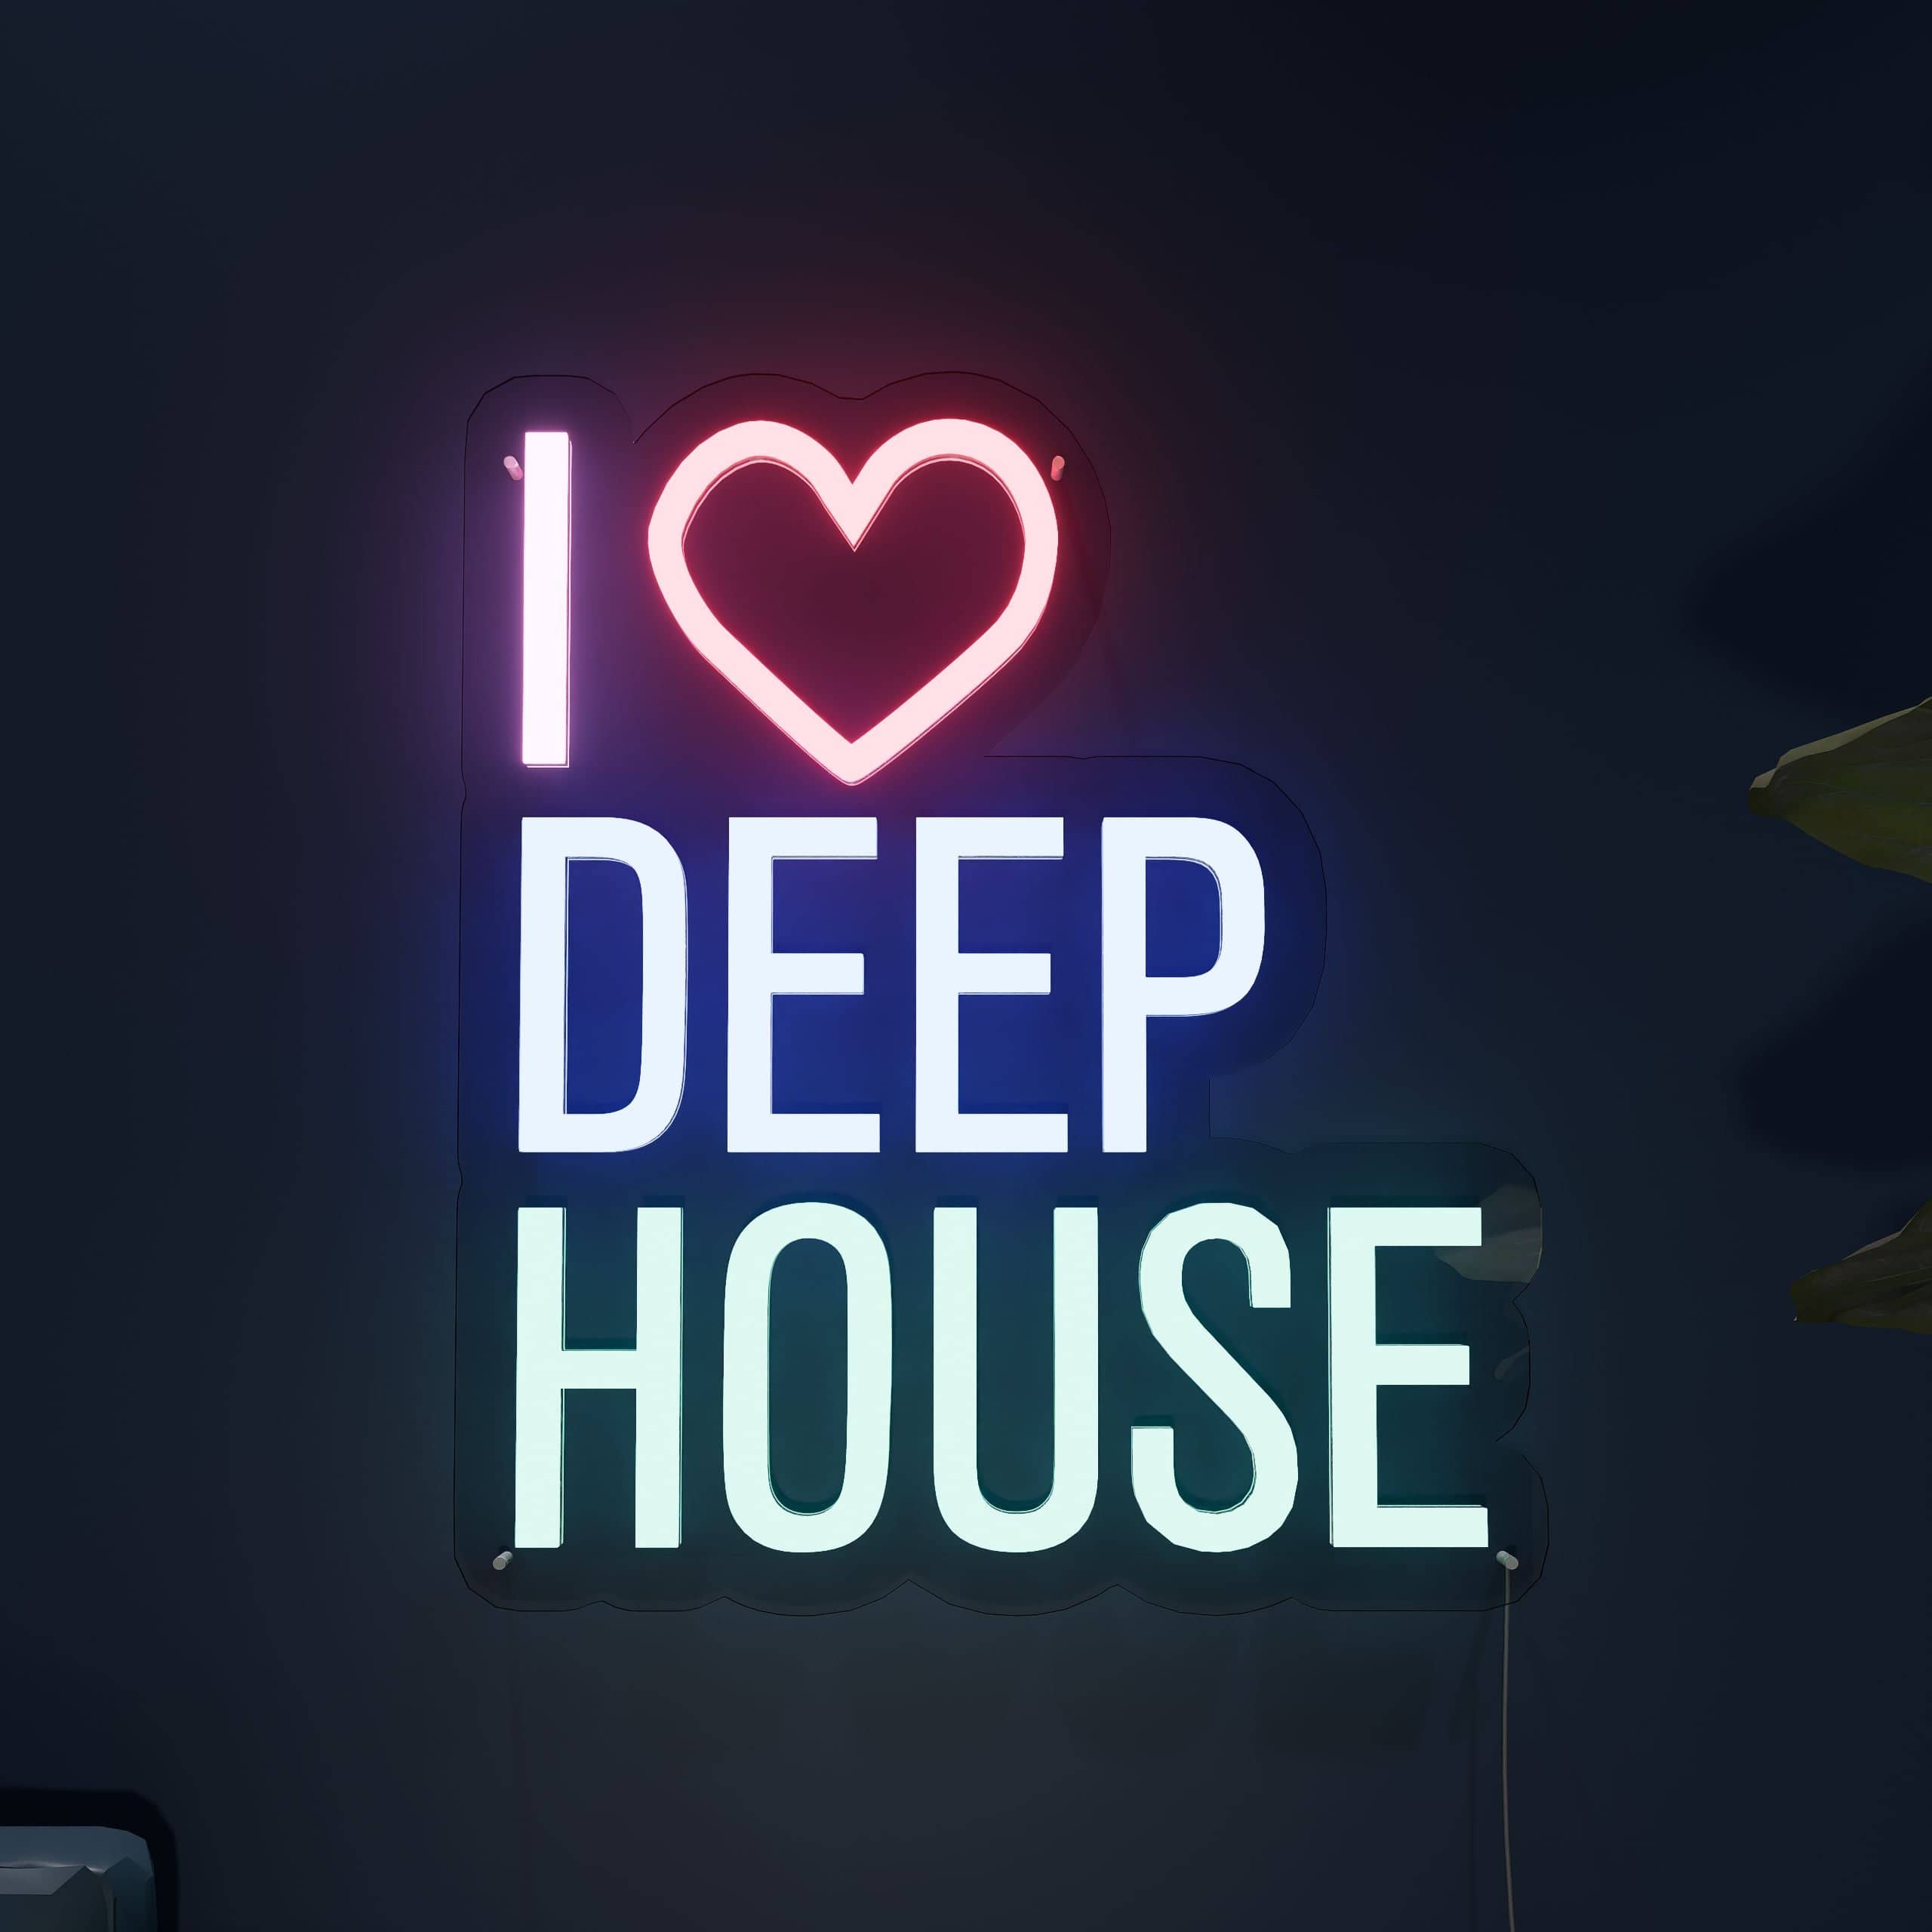 deep-house-love-affair-neon-sign-lite